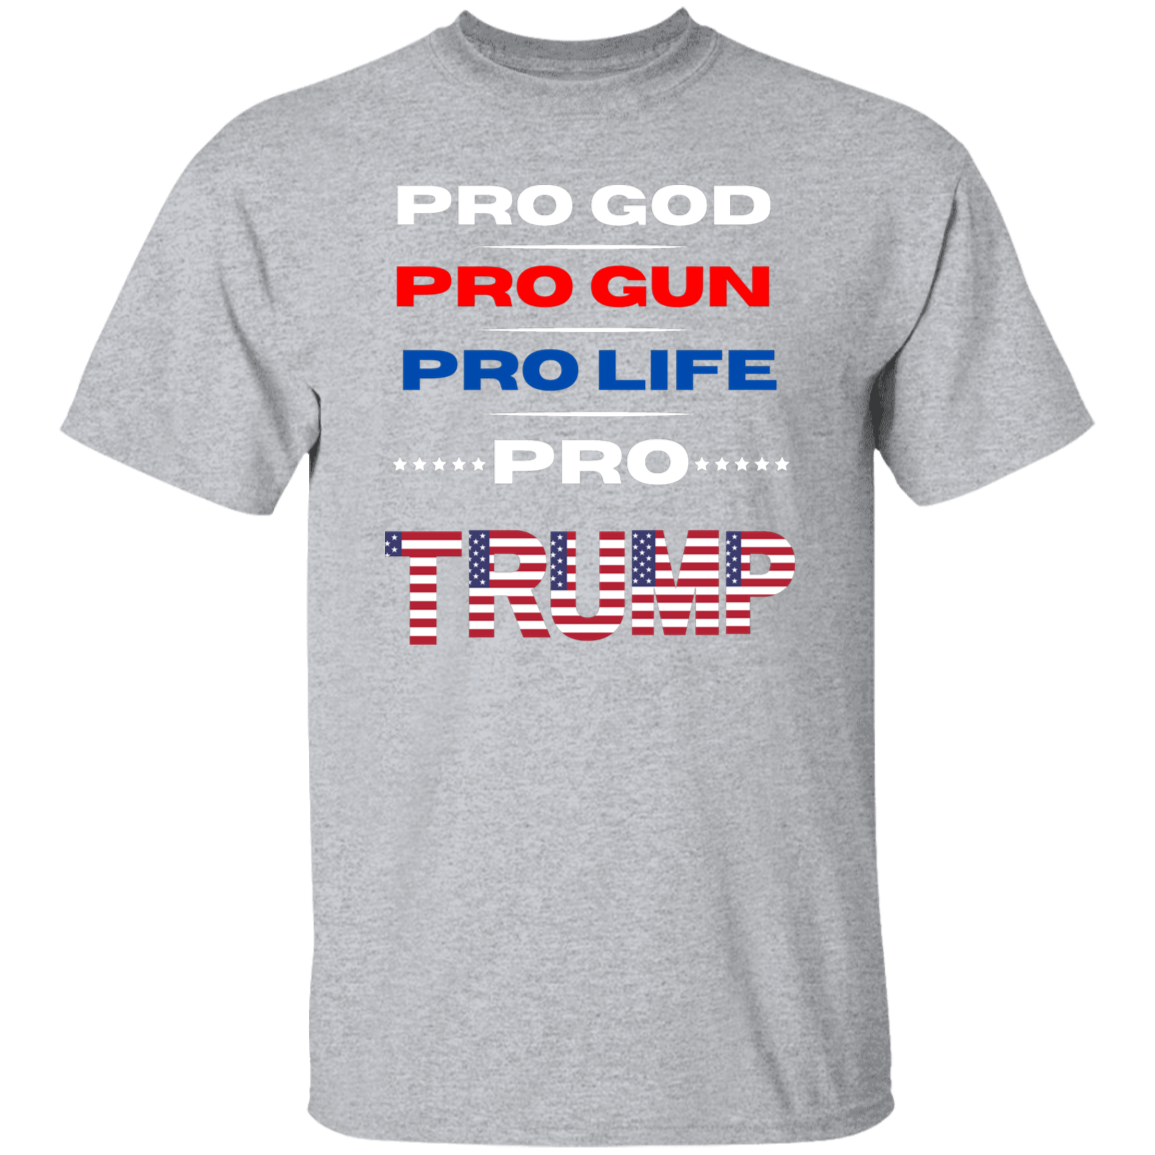 PRO GOD, GUN T-Shirt